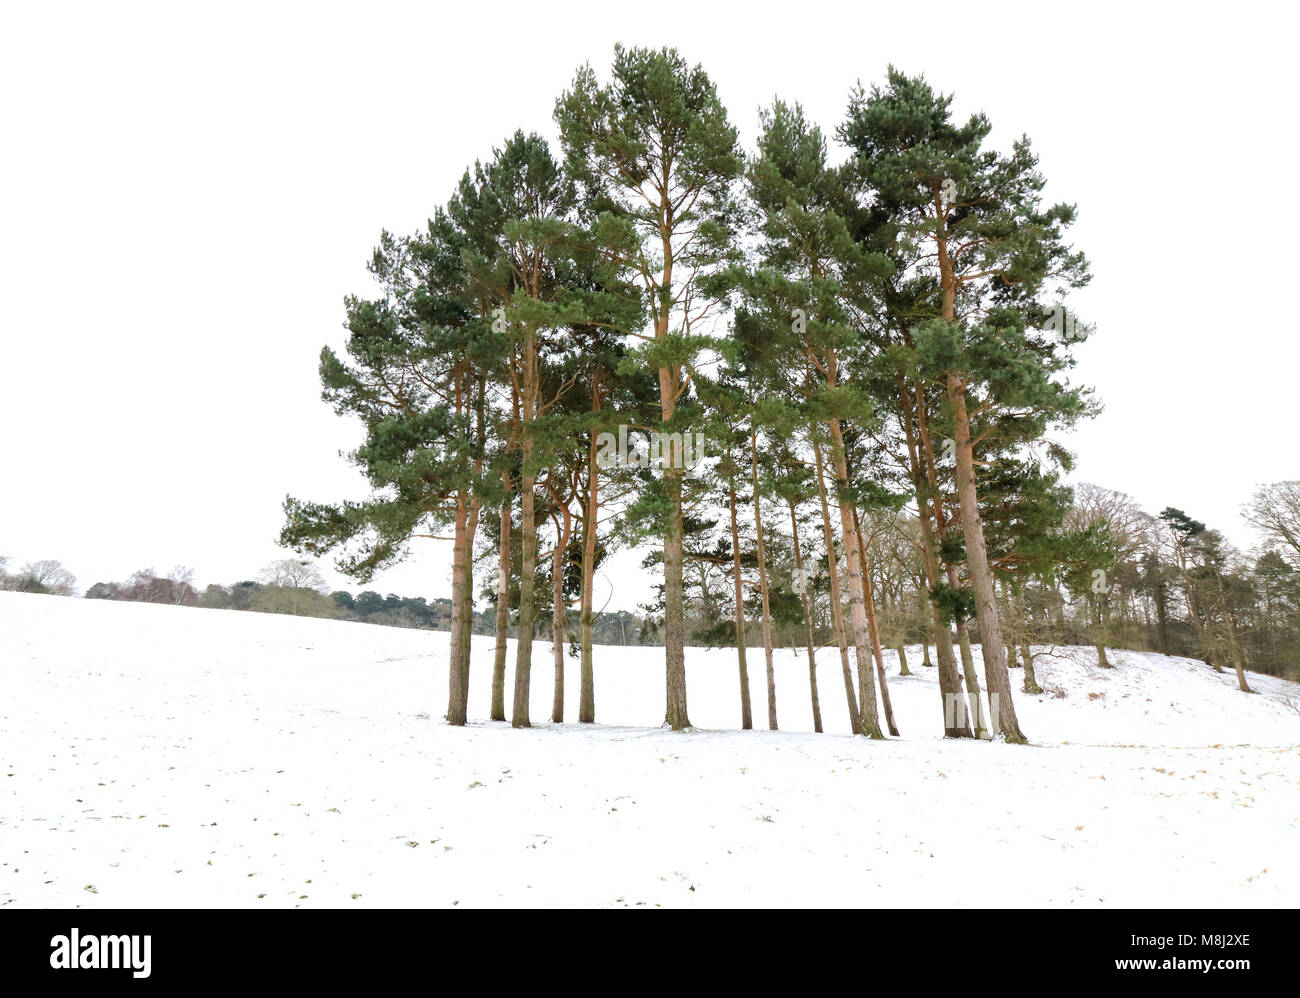 Météo France : Ampthill Park se transforme en une véritable féerie d'hiver sous la couche de neige la nuit. Ampthill, Bedfordshire, Royaume-Uni le 18 mars 2018 Photo de Keith Mayhew Crédit : KEITH MAYHEW/Alamy Live News Banque D'Images